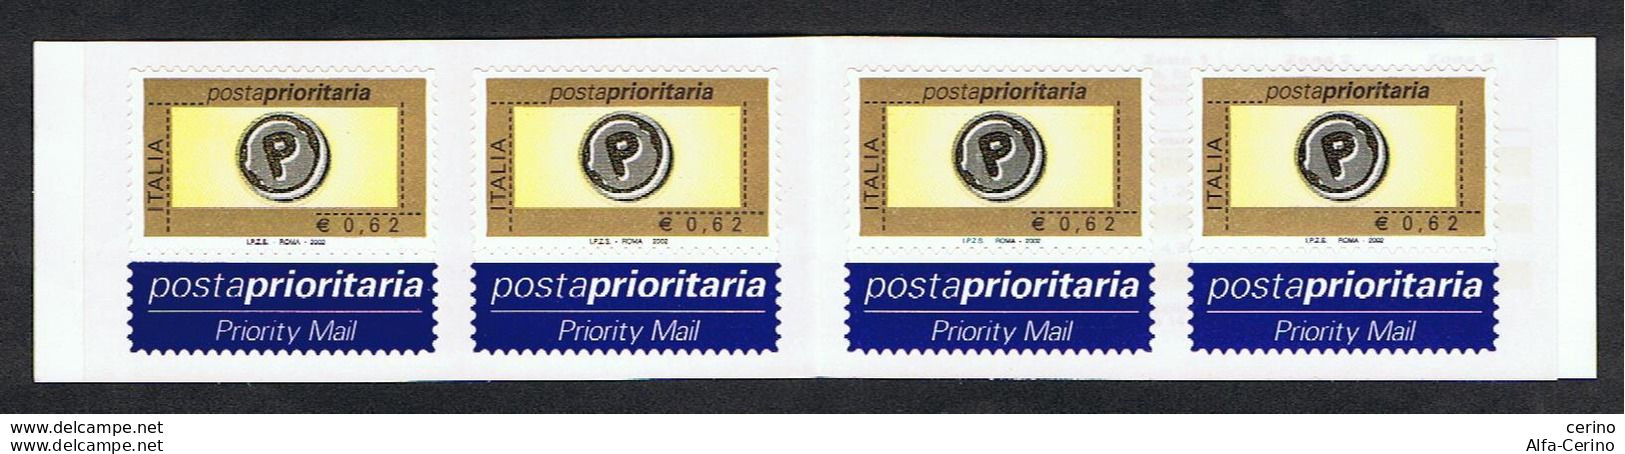 REPUBBLICA:  2002  LIBRETTO  POSTA  PRIORITARIA  -  €. 0,62 X 4  POLICROMO  -  SASS. 24 - Postzegelboekjes